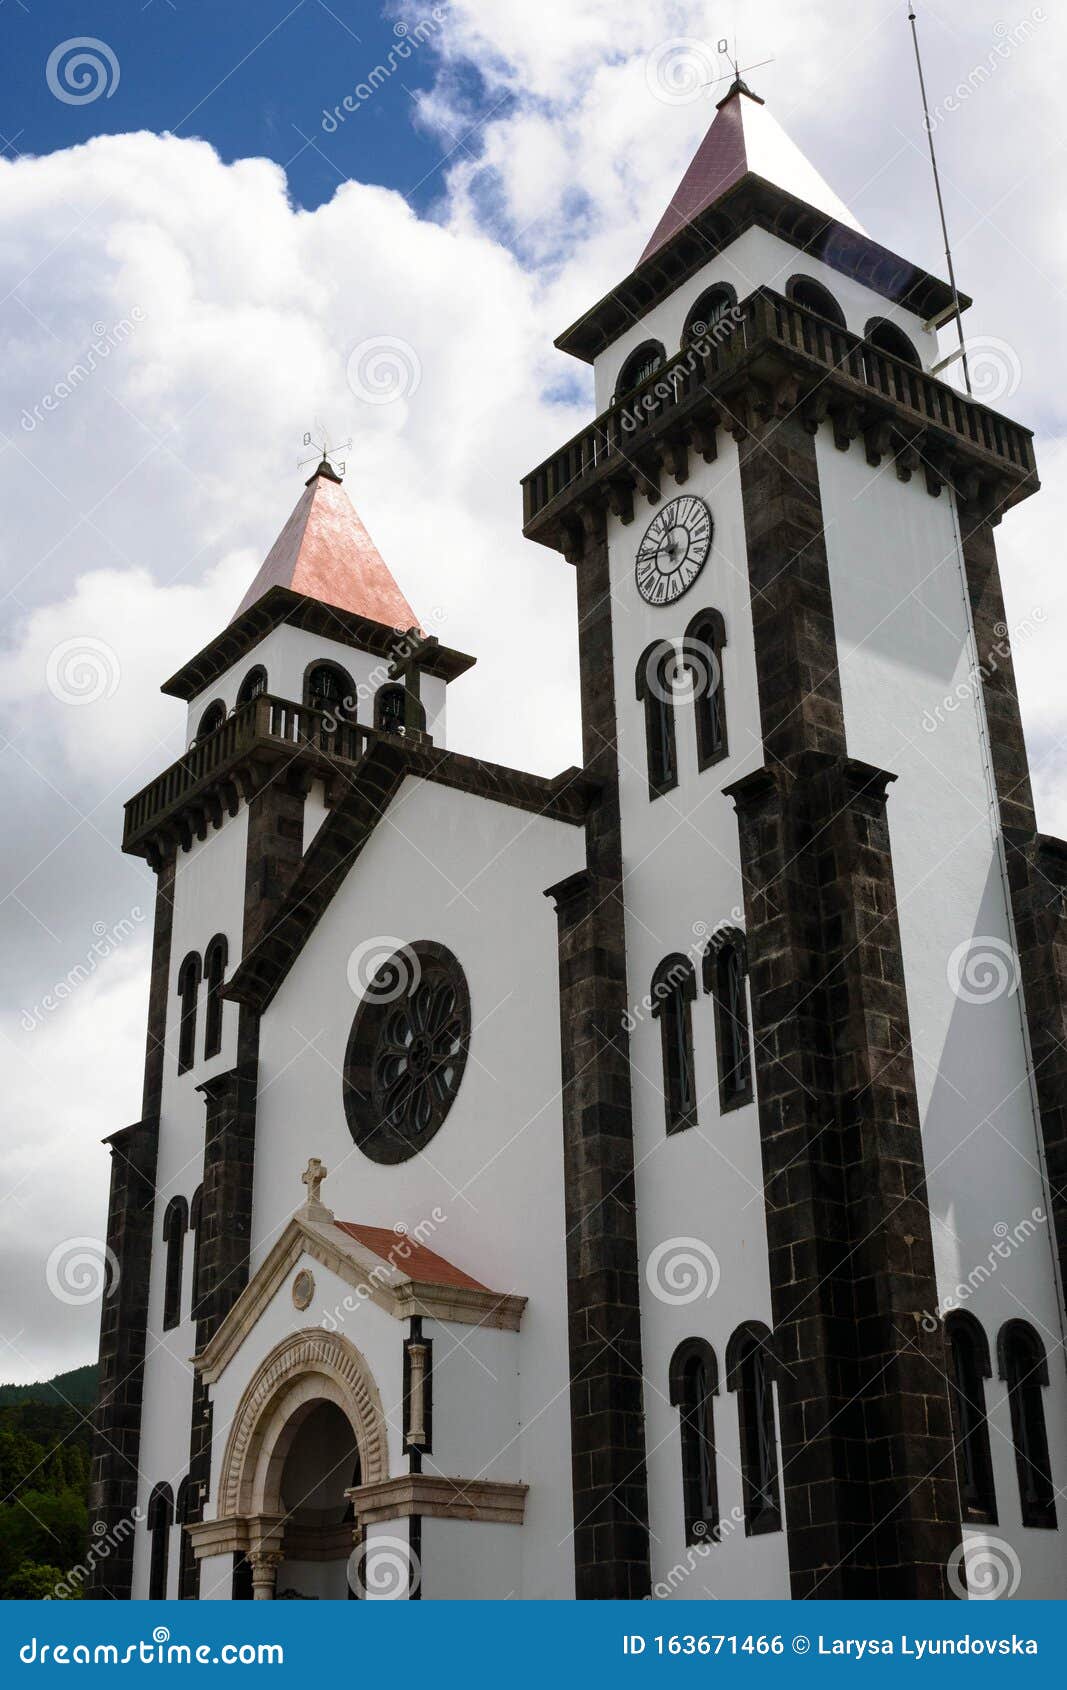 igreja de nossa senhora da alegria church, furnas, san miguel island, portugal